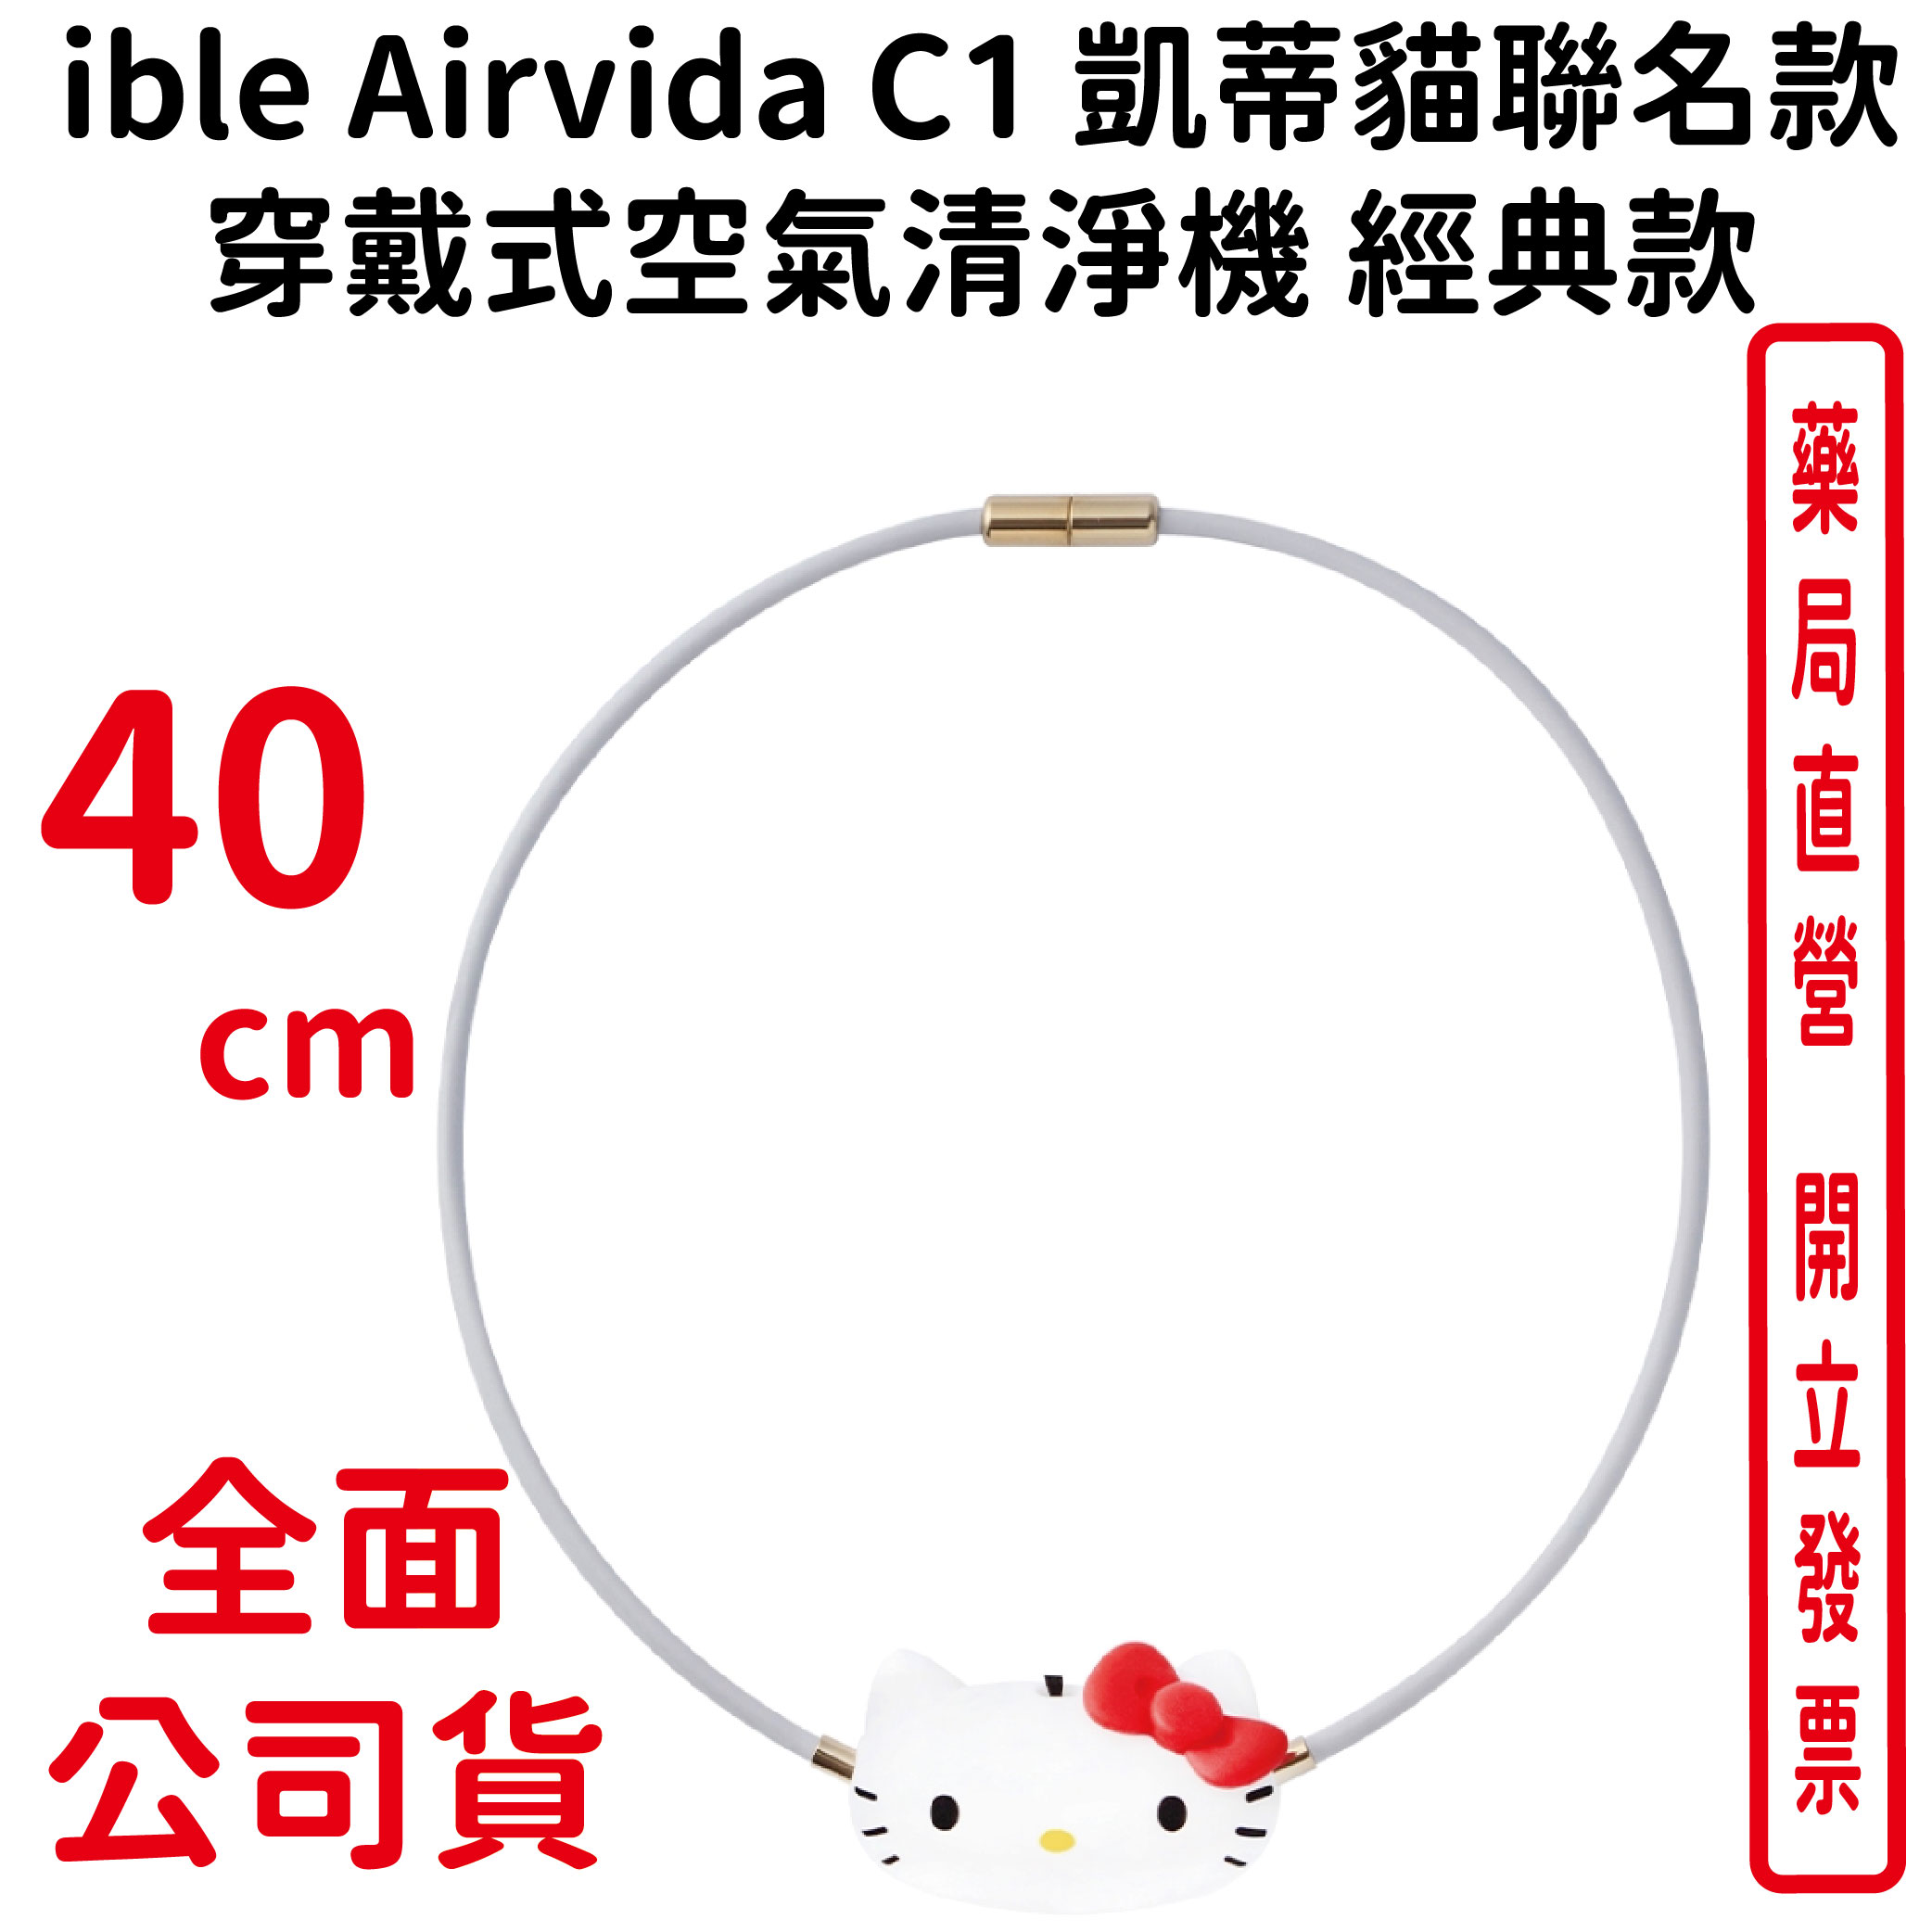 ible Airvida C1 凱蒂貓聯名款穿戴式空氣清淨機 經典款